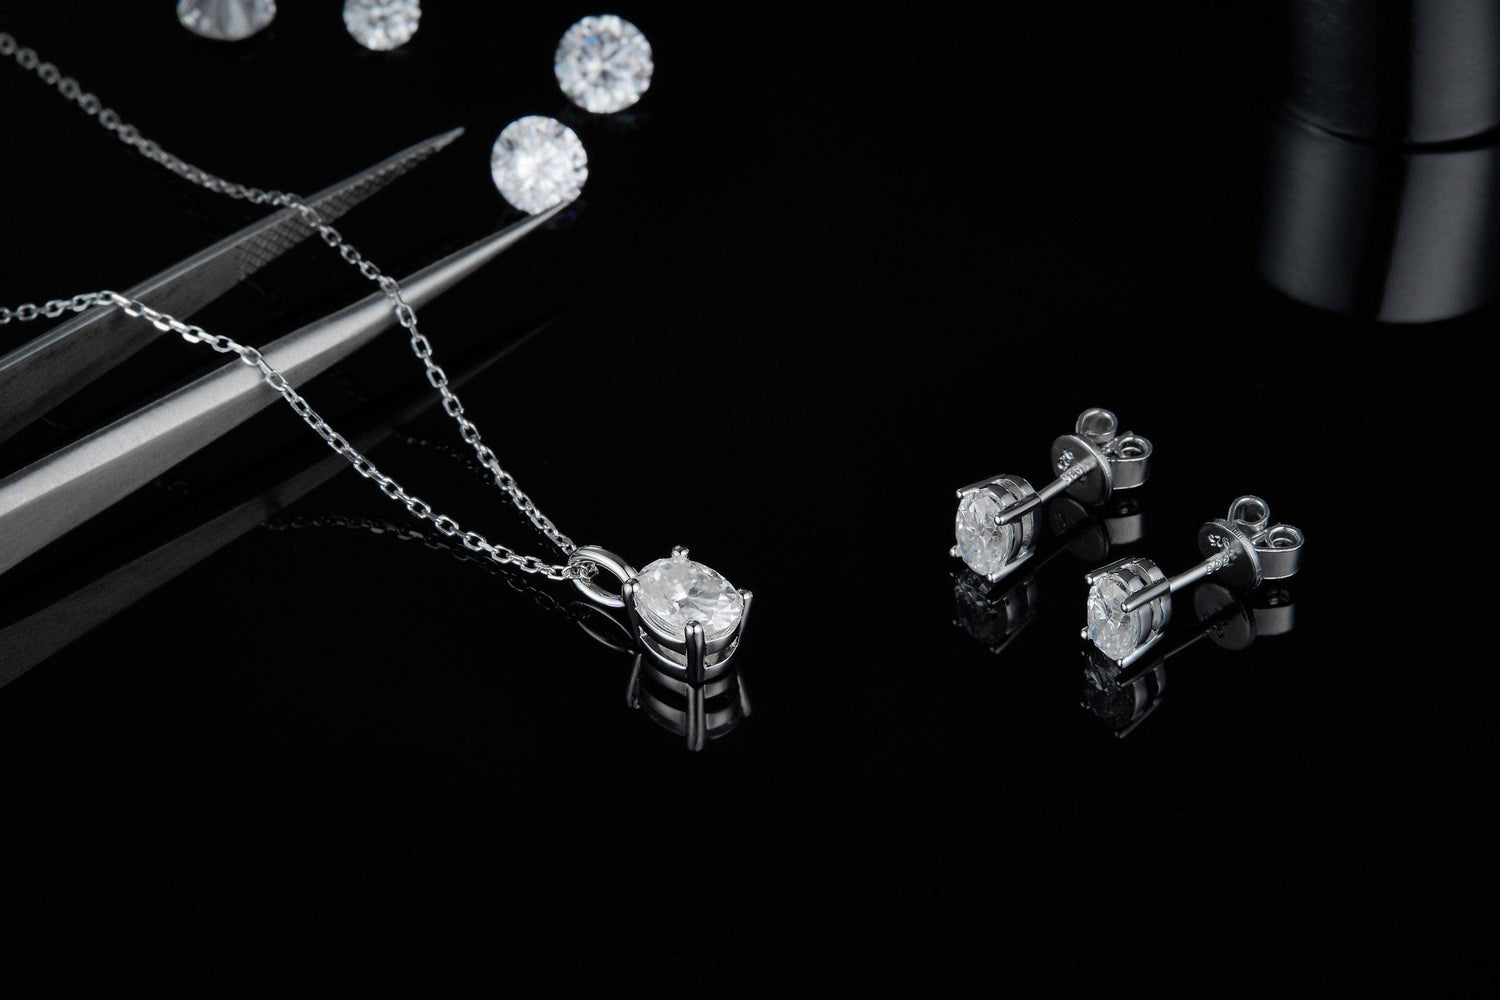 Oval Brilliant Moissanite Necklace Earrings Sets For Women Wedding - Black Diamonds New York